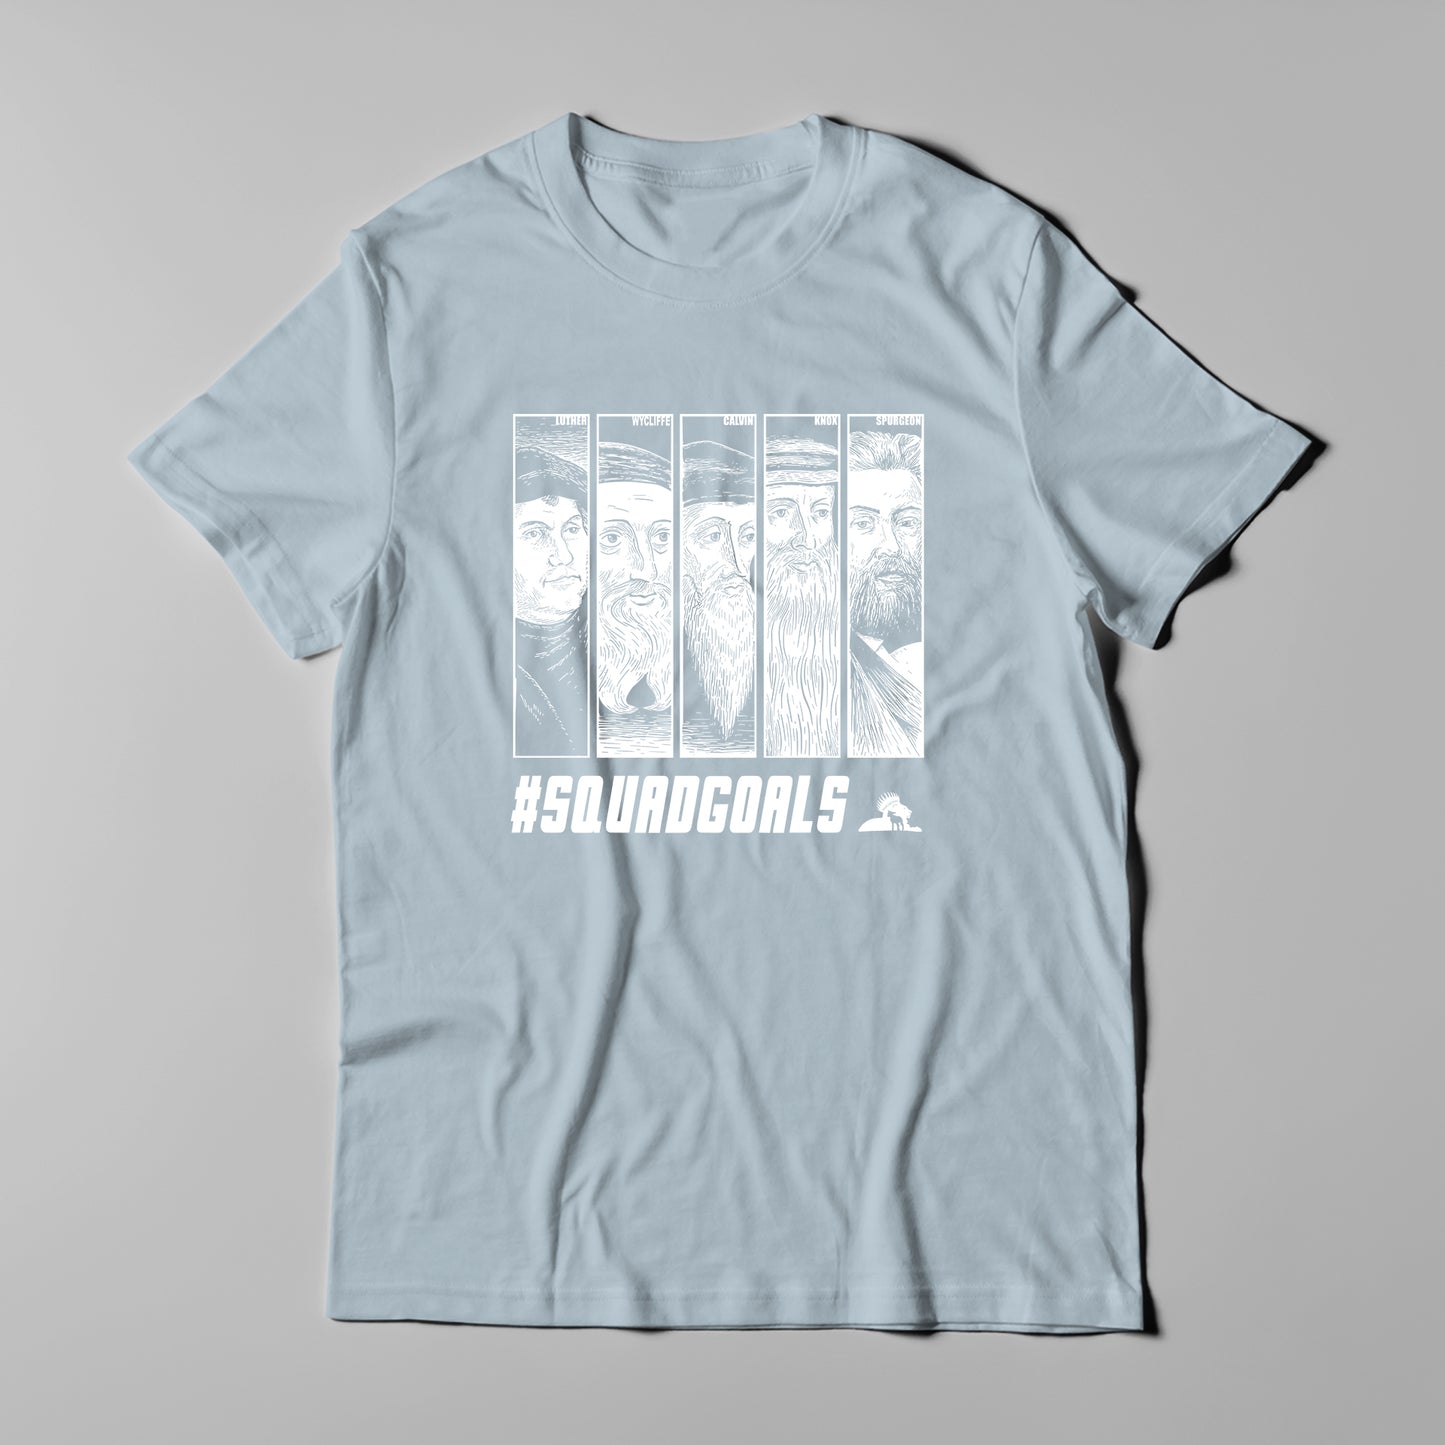 Squad Goals - Men T-Shirt